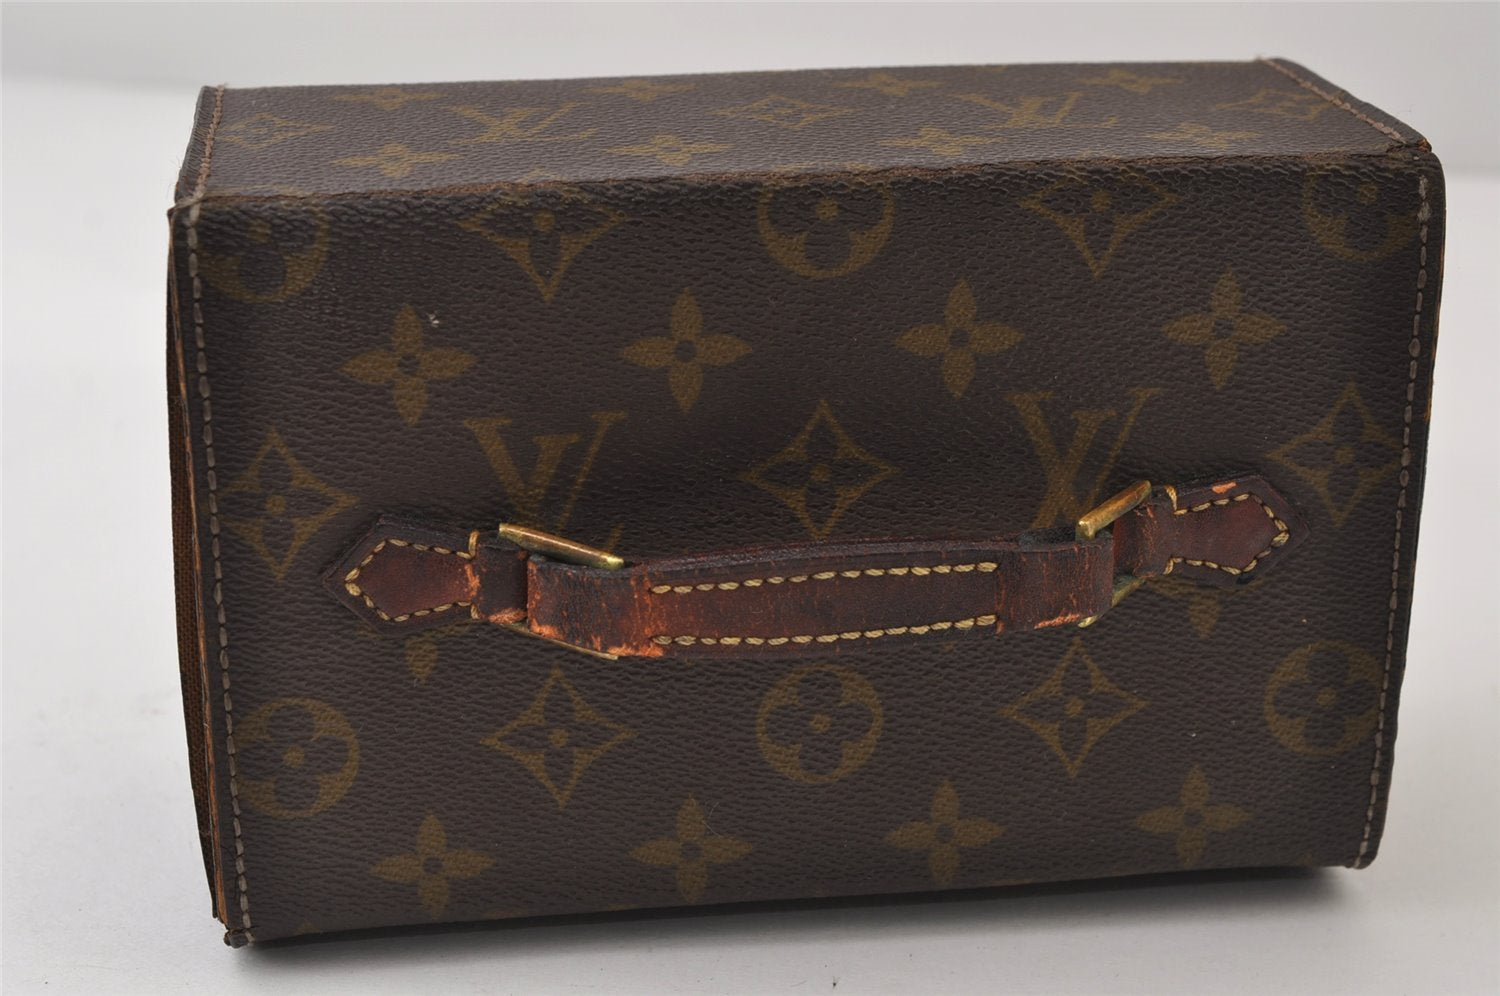 Authentic Louis Vuitton Monogram Boite A Tout Jewelry Case Old Model Junk 0244J